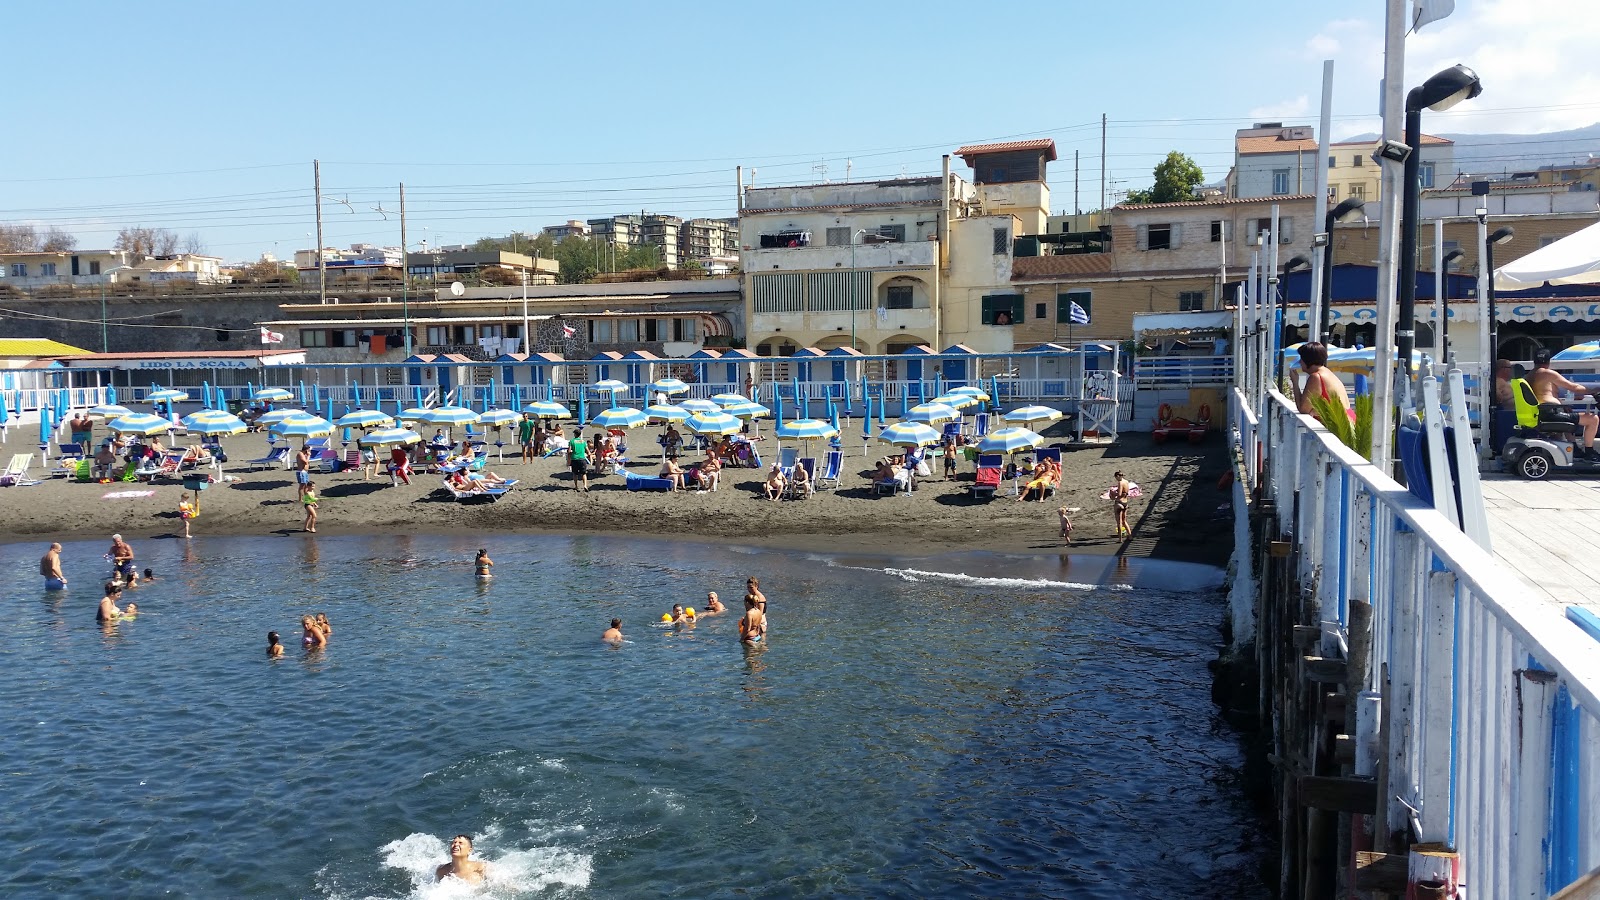 Foto van Spiaggia di via Calastro met gemiddeld niveau van netheid